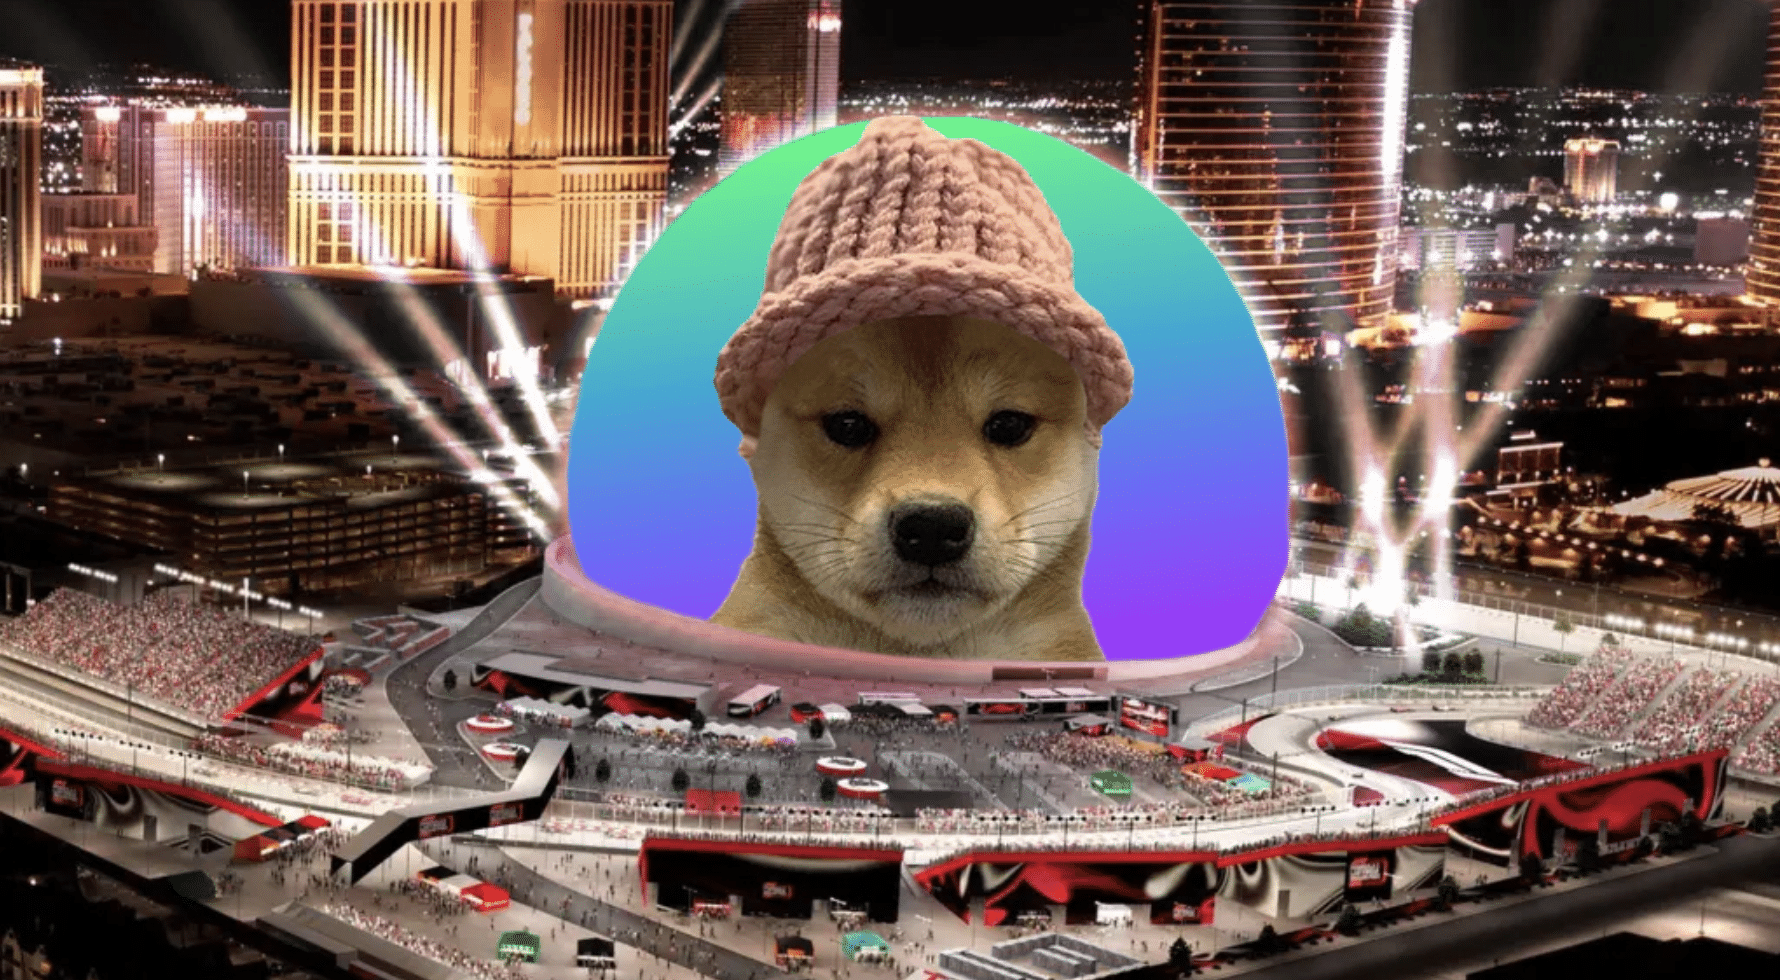 ผู้ที่ชื่นชอบ Crypto ระดมทุนเกือบ 690,000 ดอลลาร์เพื่อนำ Dogwifhat Meme มาที่ Las Vegas Sphere - Unchained